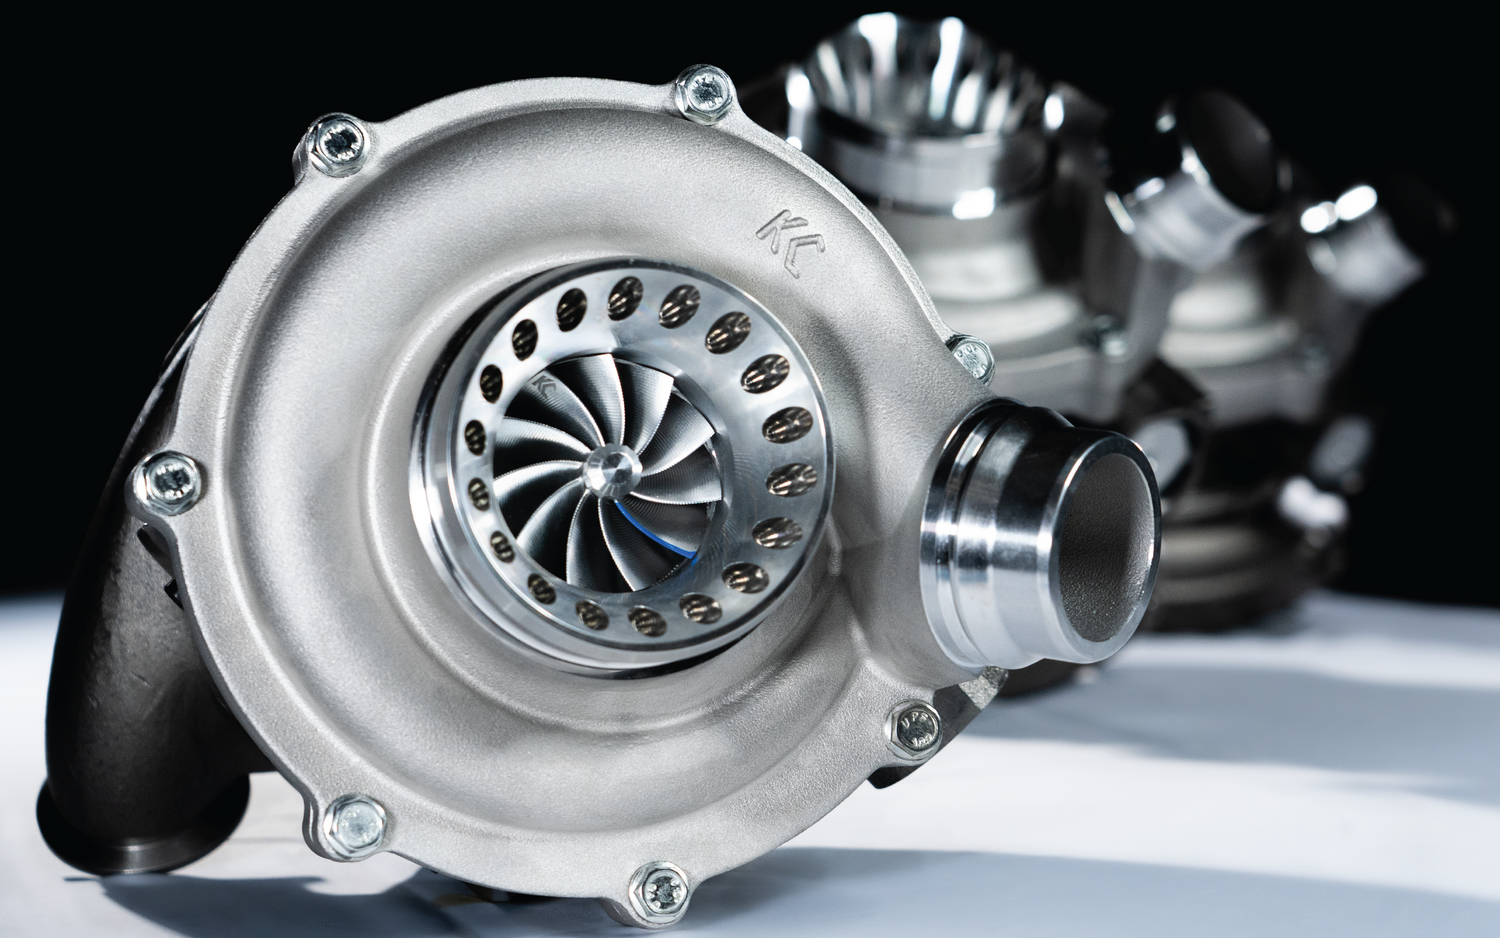 KC Turbos - Leading diesel turbo manufacturer, retail & distributor